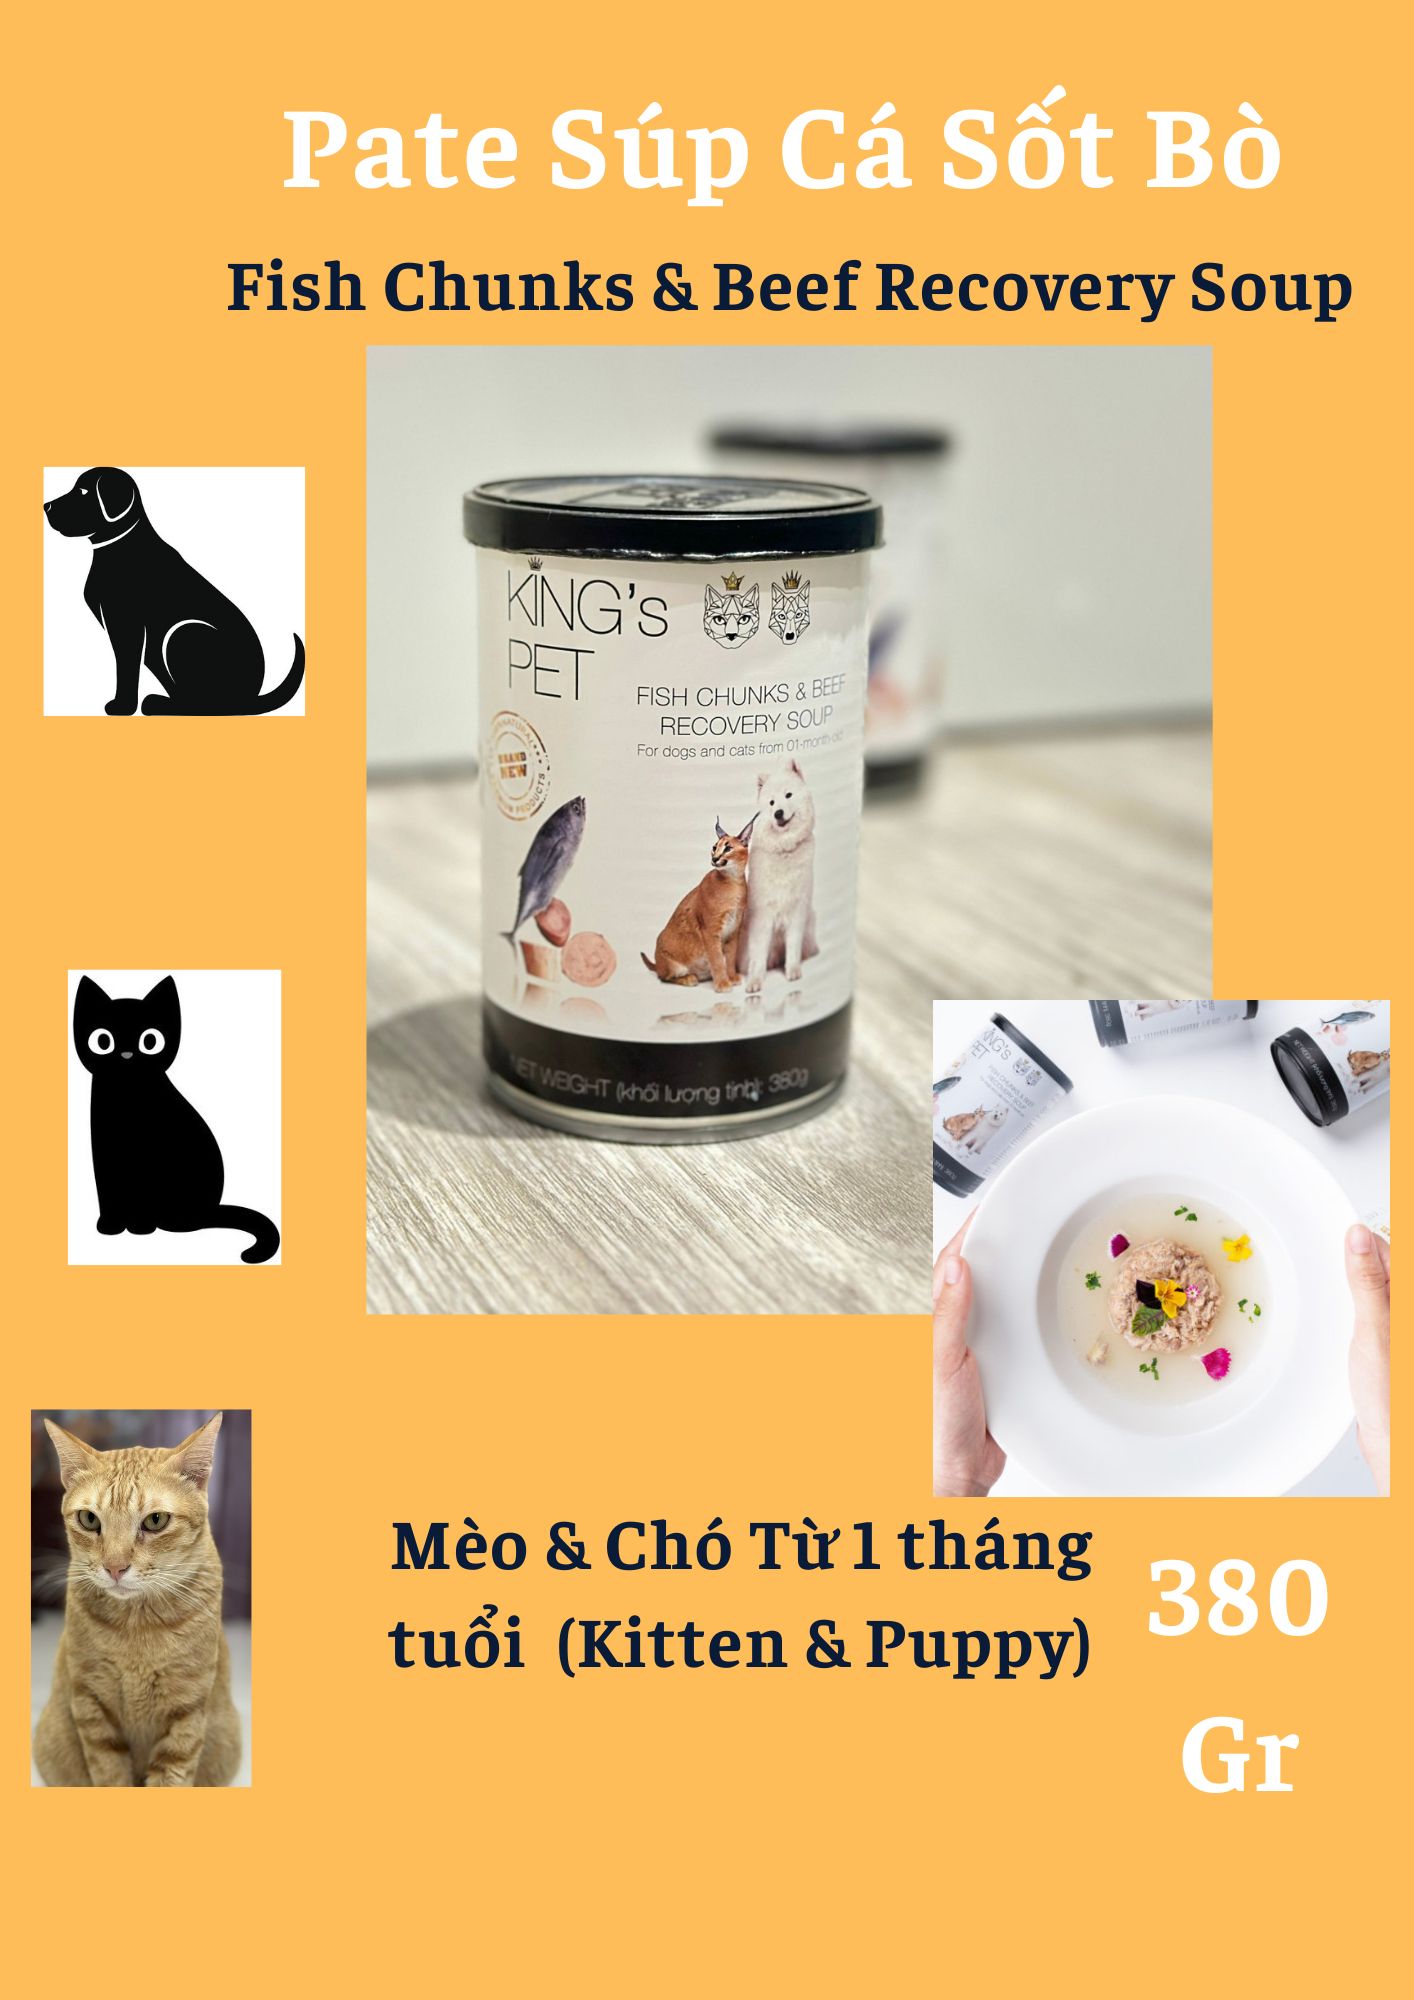 King's Pet-Pate Súp Cá Sốt Bò lon 380Gr cho CHÓ & MÈO từ 1 tháng tuổi [Fish Chunks & Beef Recovery Soup]